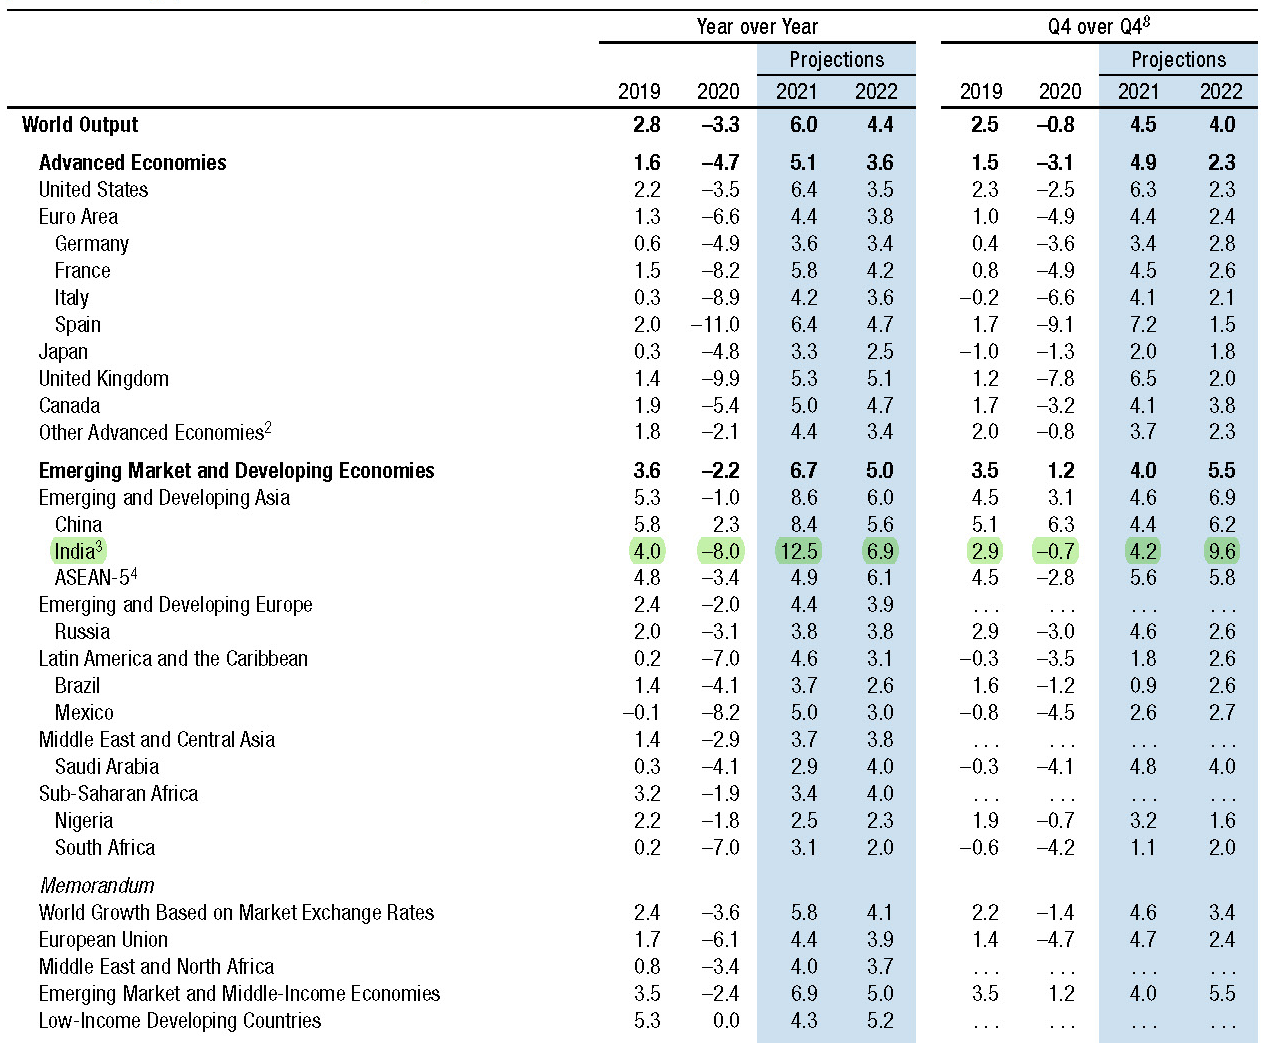 Le previsioni di crescita del Pil nel mondo secondo il FMI